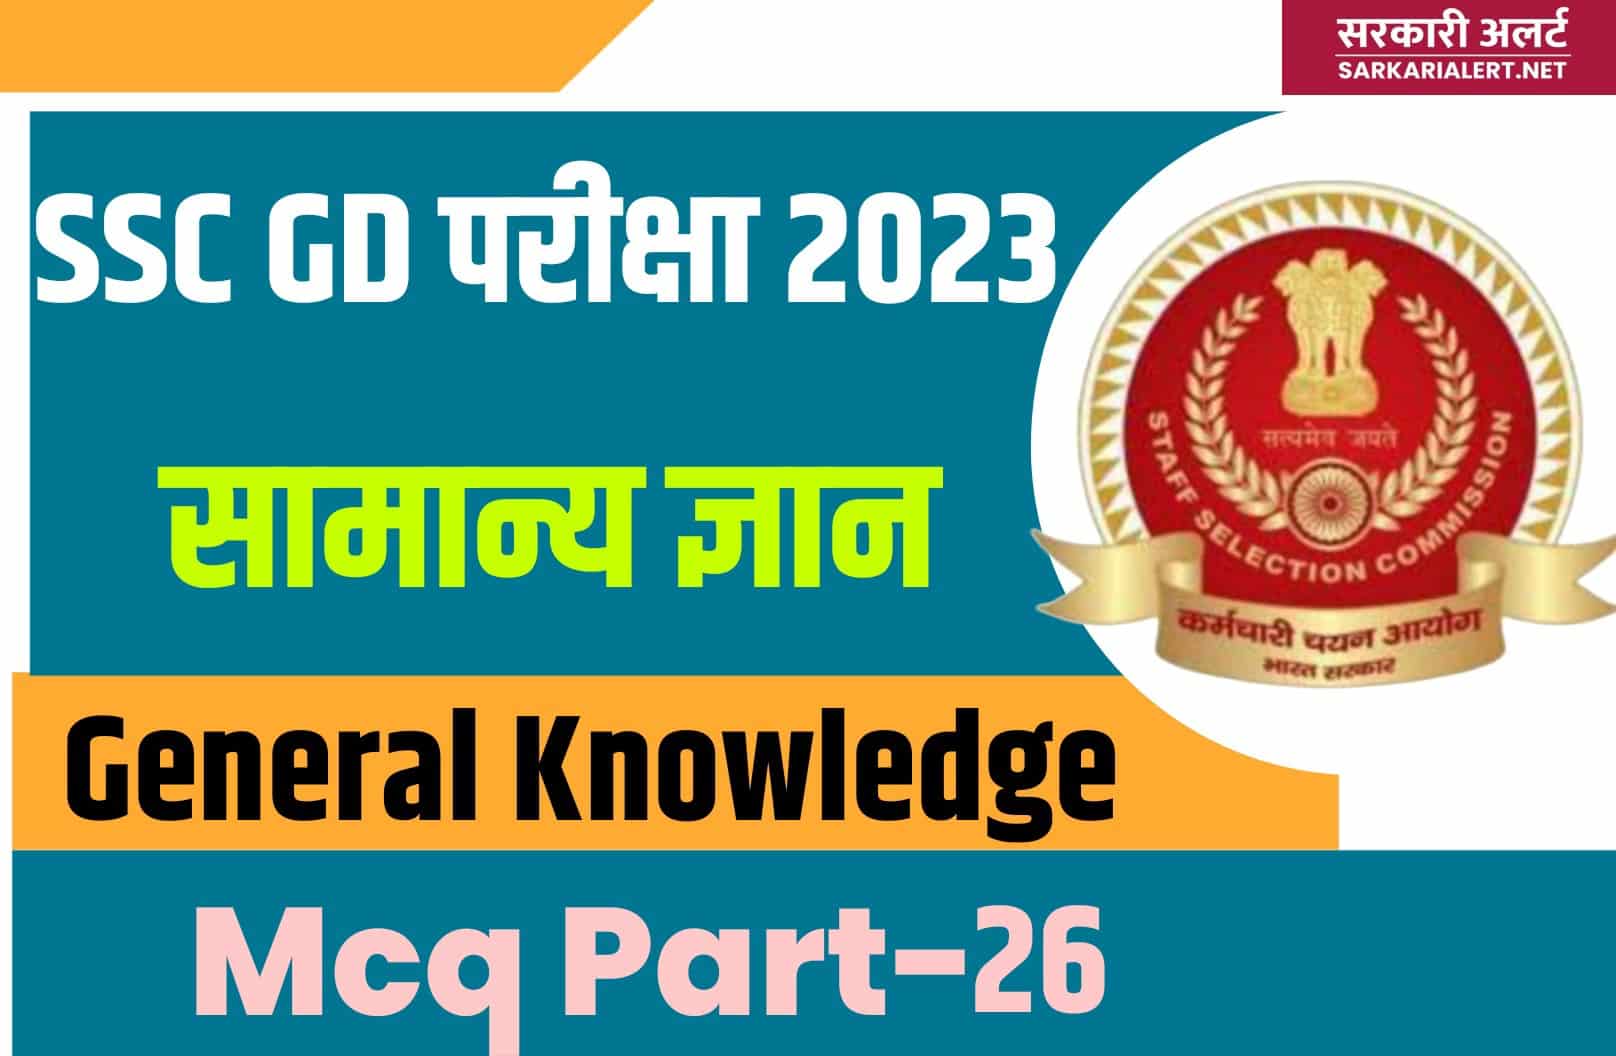 SSC GD Exam 2023 GK MCQ – 26 | सामान्य ज्ञान के मुख्य प्रश्नों का संग्रह